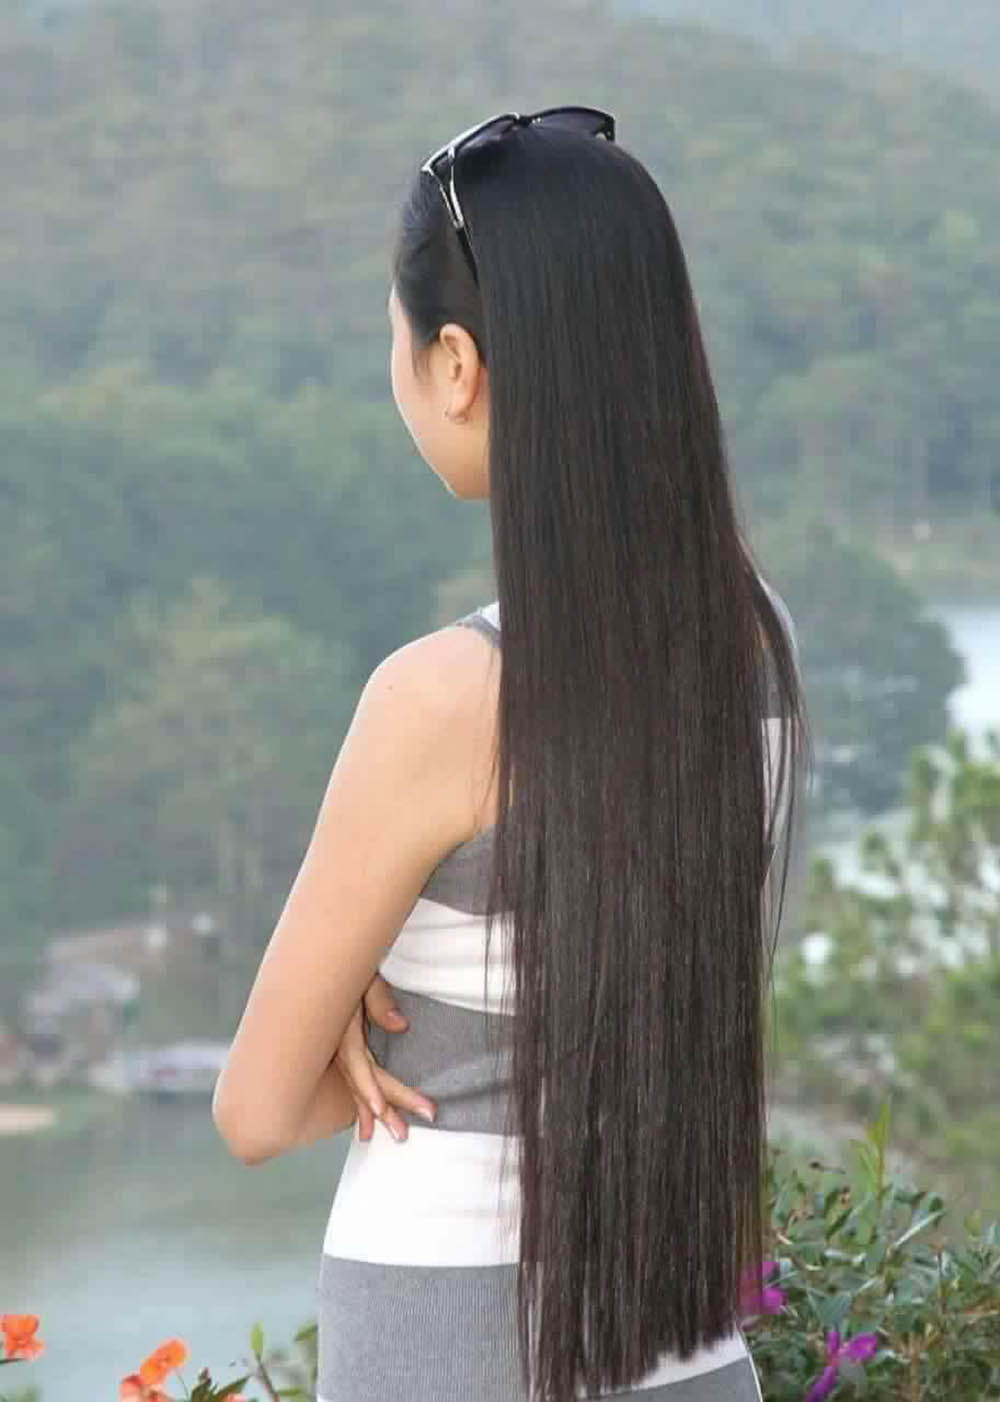 Bộ sưu tập hình ảnh cô gái tóc dài đẹp với nhiều phong cách